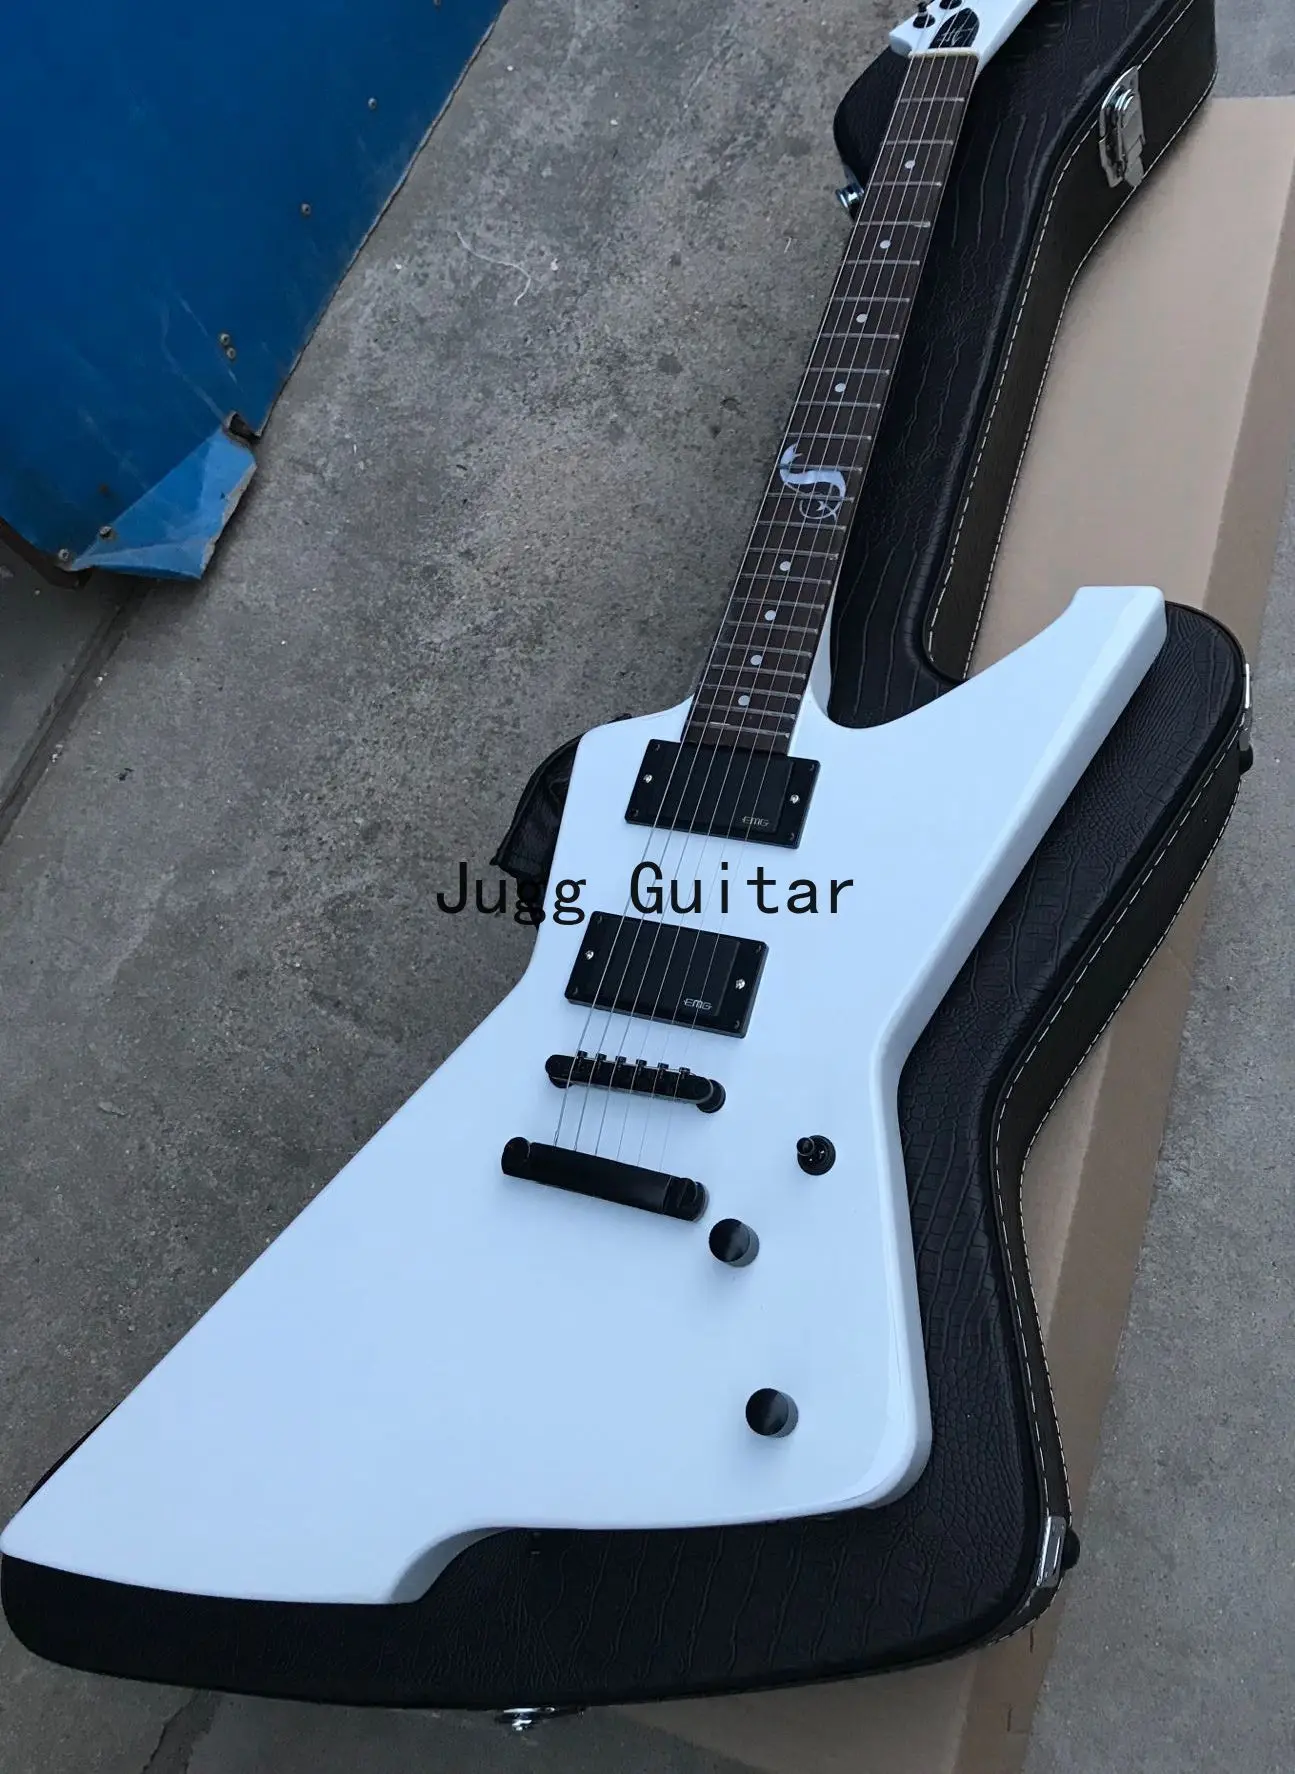 Metallic James Hetfield Snake Byte White Explorer Electric Guitar Active Pickups & 9V Battery Box, Black Hardware